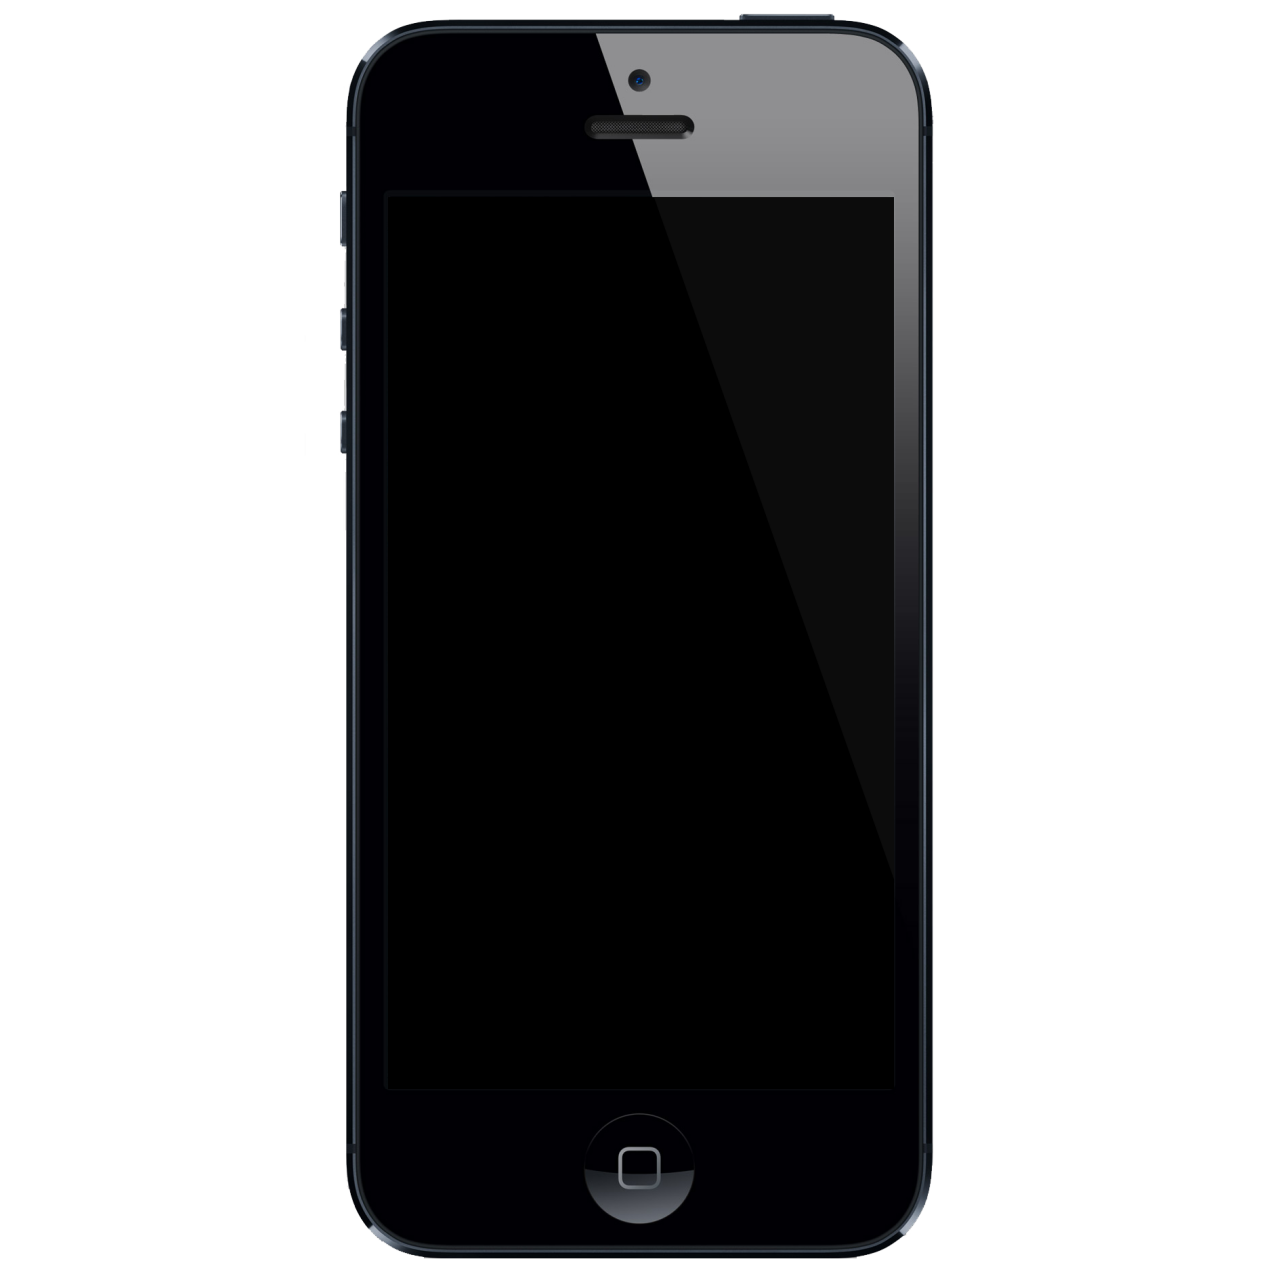 Tuto pour revenir à iOS 8 sur votre iPhone 6 et iPhone 6 Plus